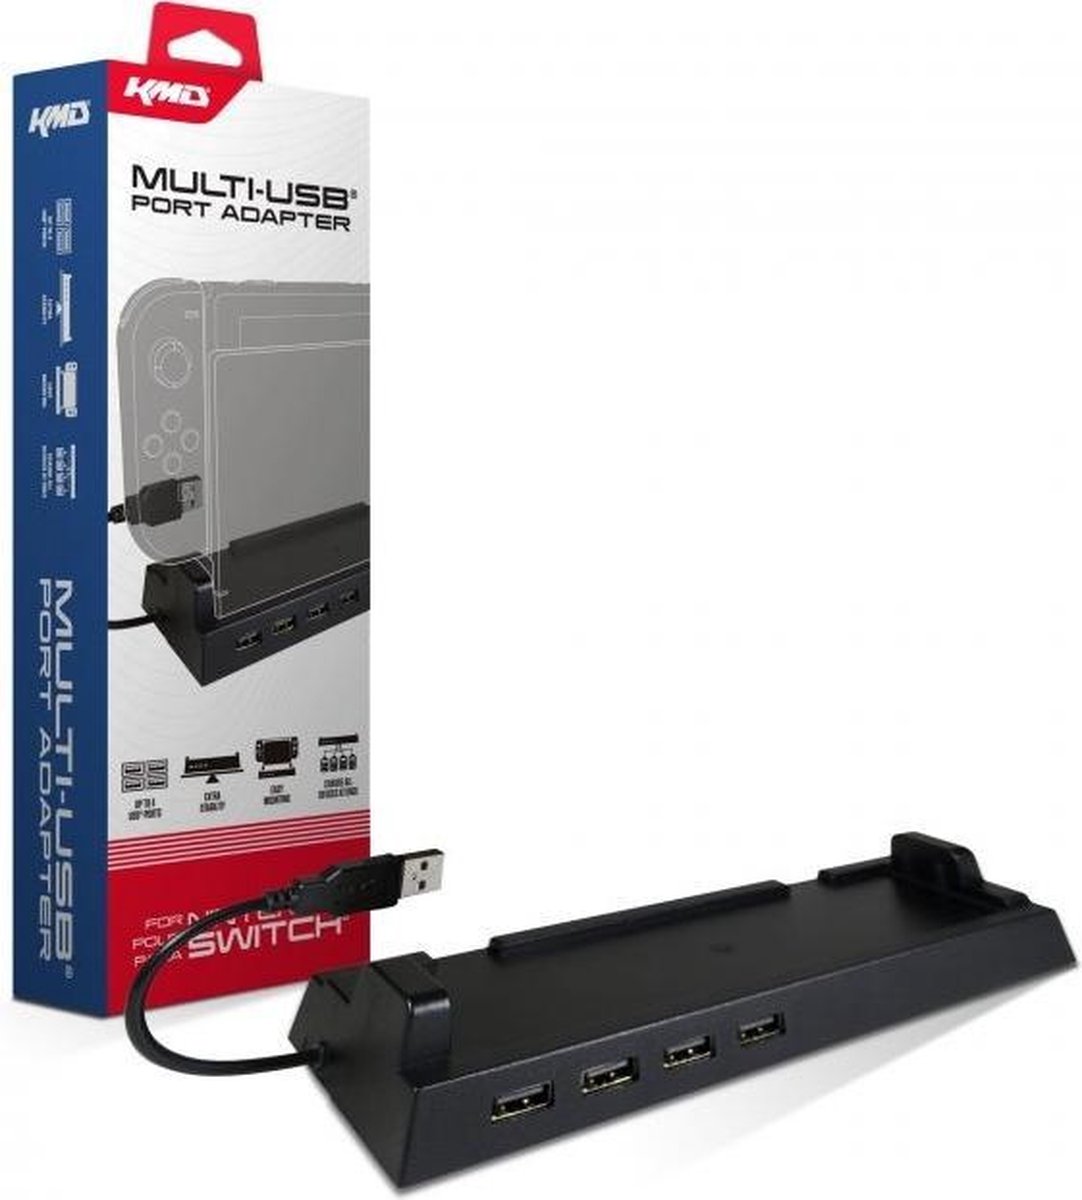 Multi-USB Port Adapter (KMD) - KMD